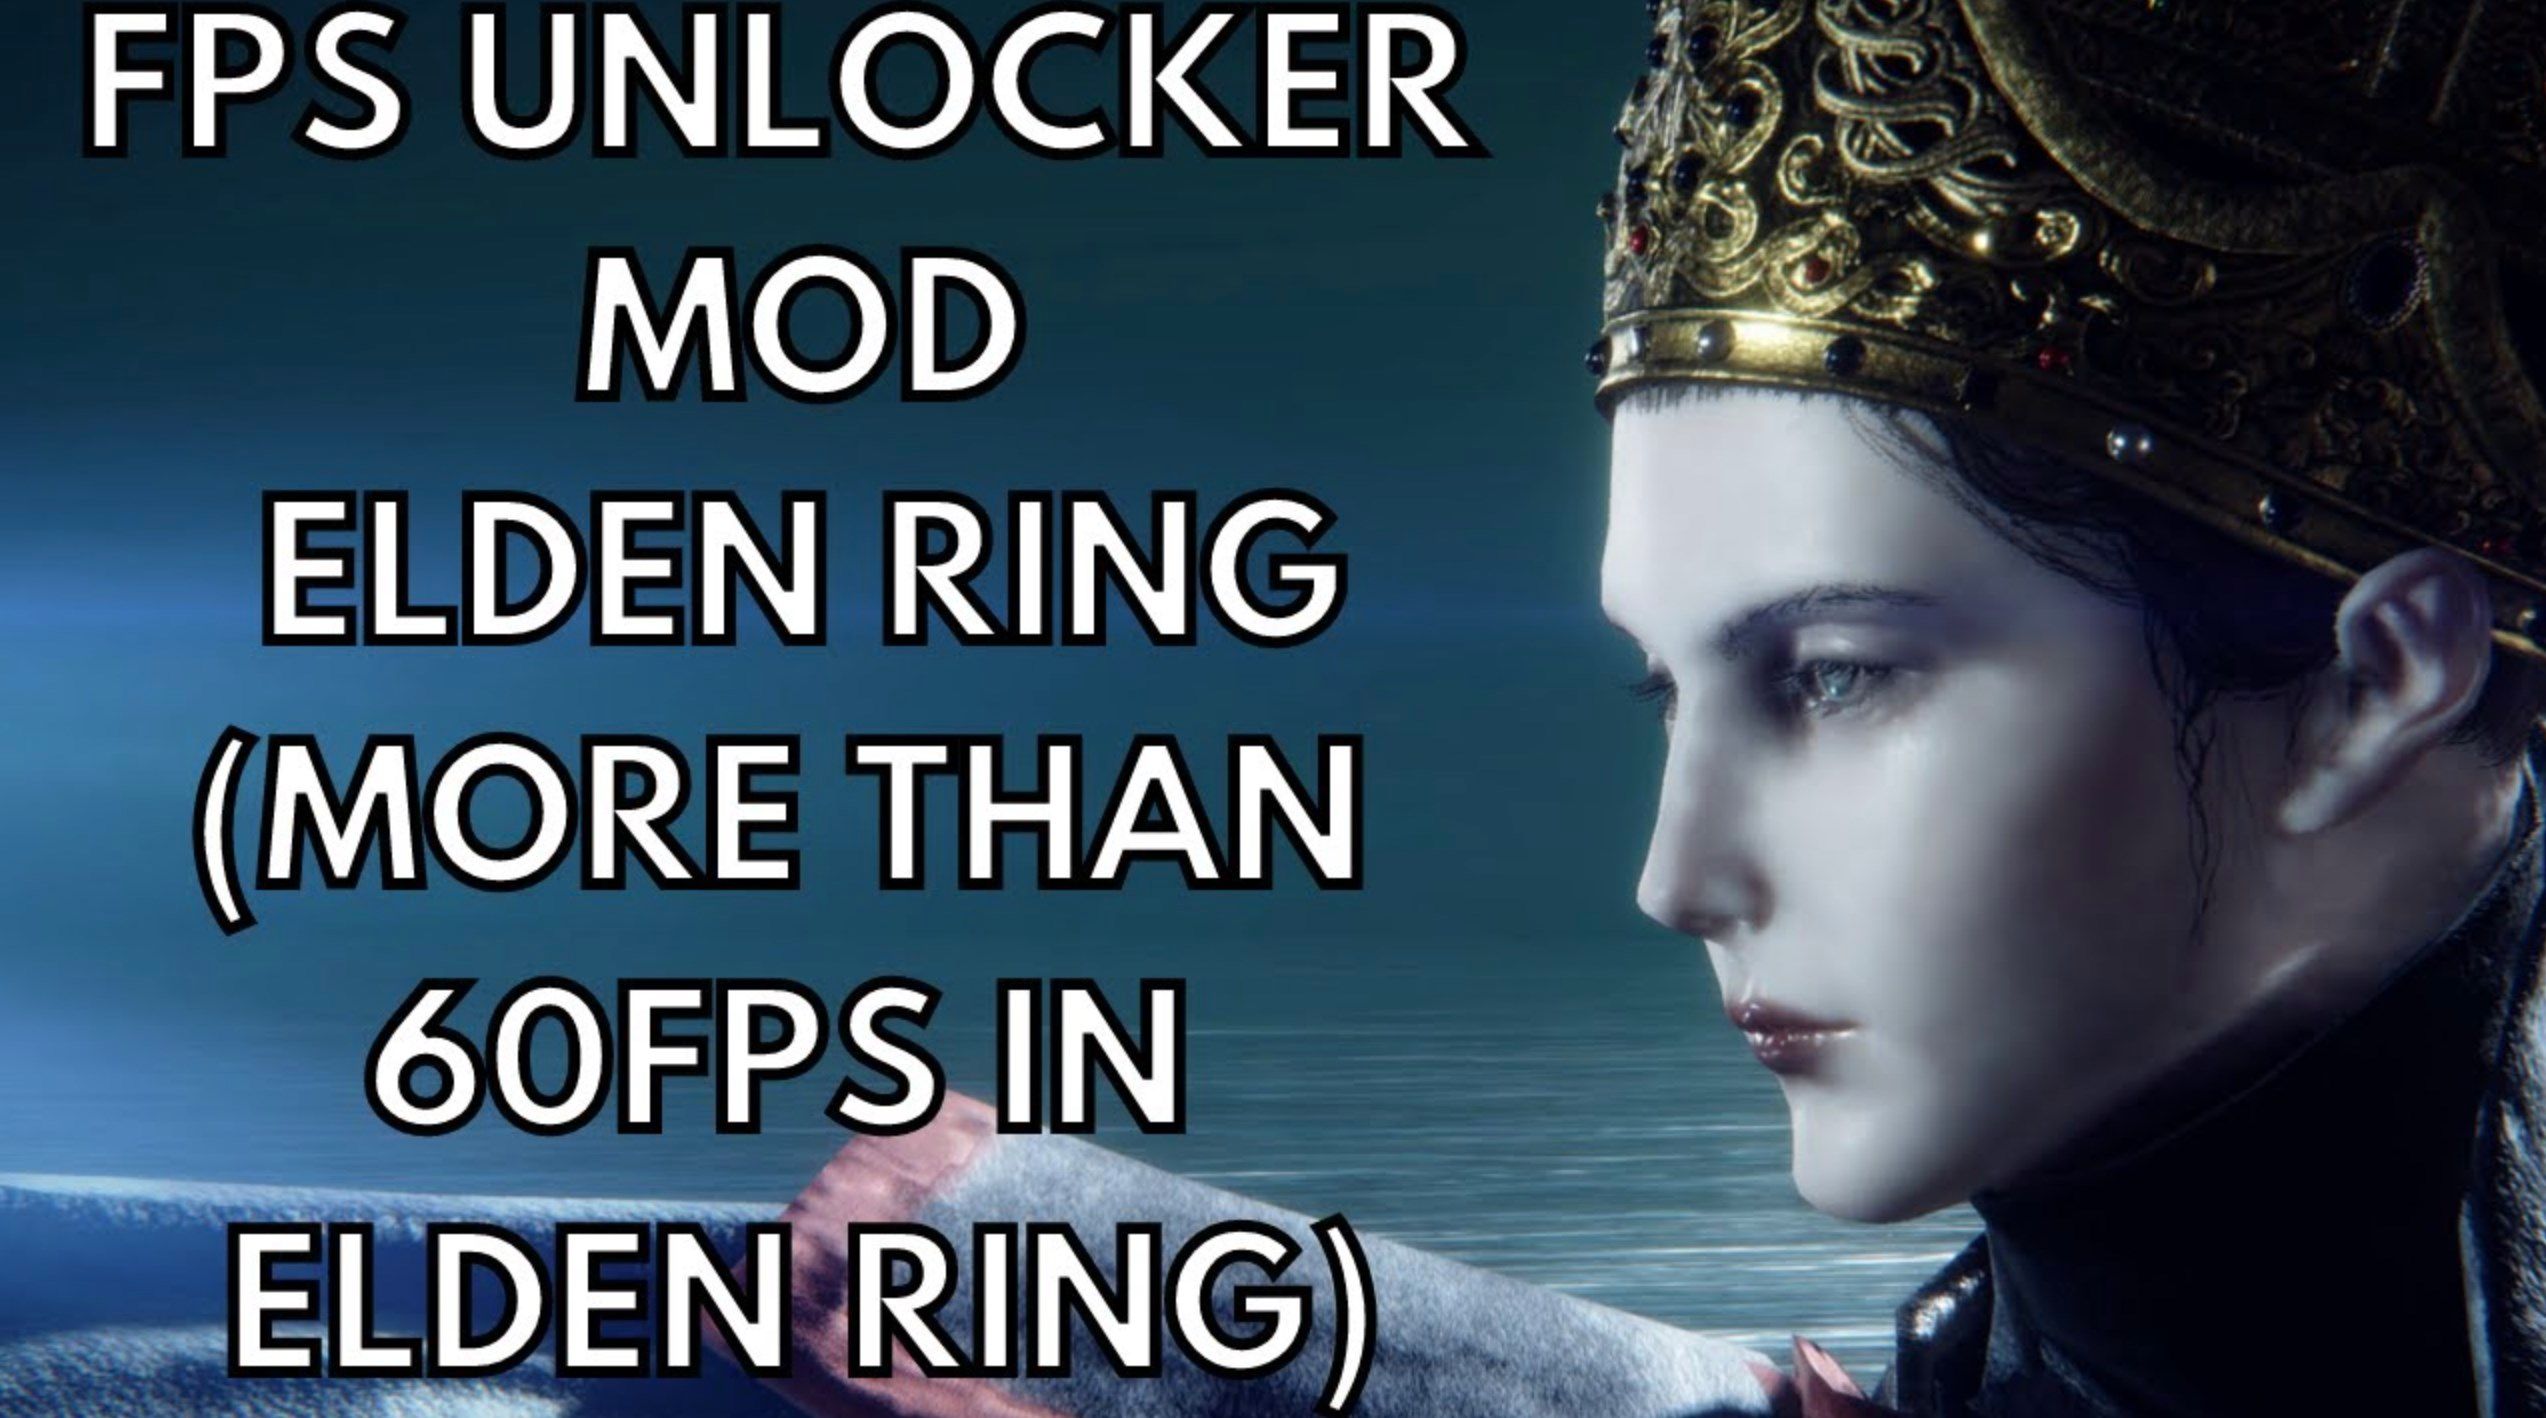 FPS Unlocker for game